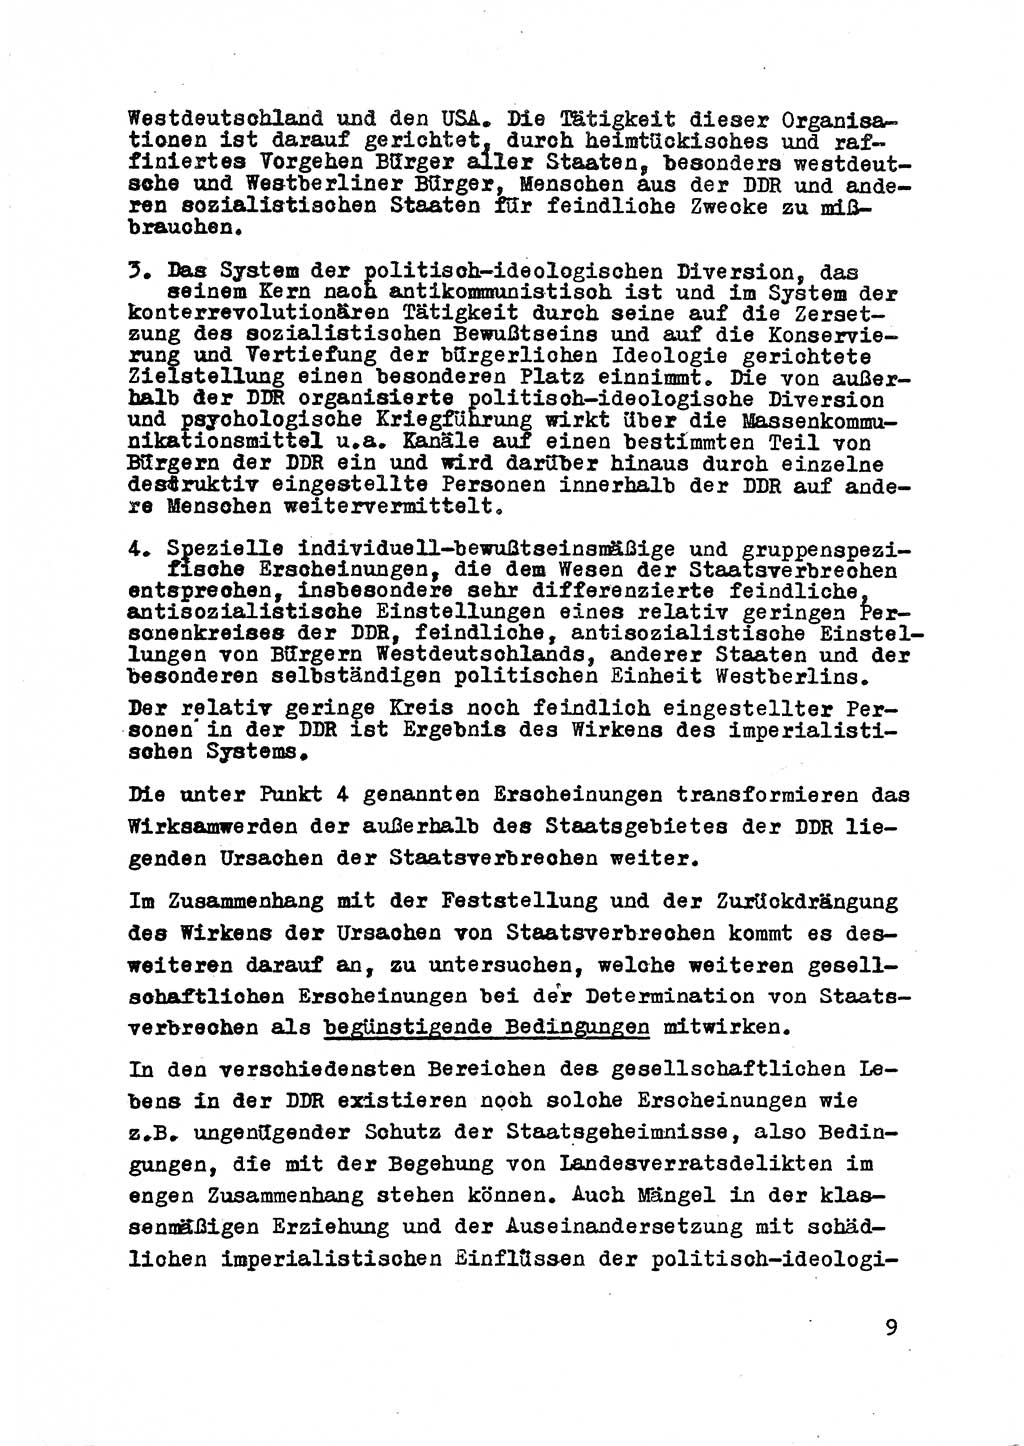 Strafrecht der DDR (Deutsche Demokratische Republik), Besonderer Teil, Lehrmaterial, Heft 2 1969, Seite 9 (Strafr. DDR BT Lehrmat. H. 2 1969, S. 9)